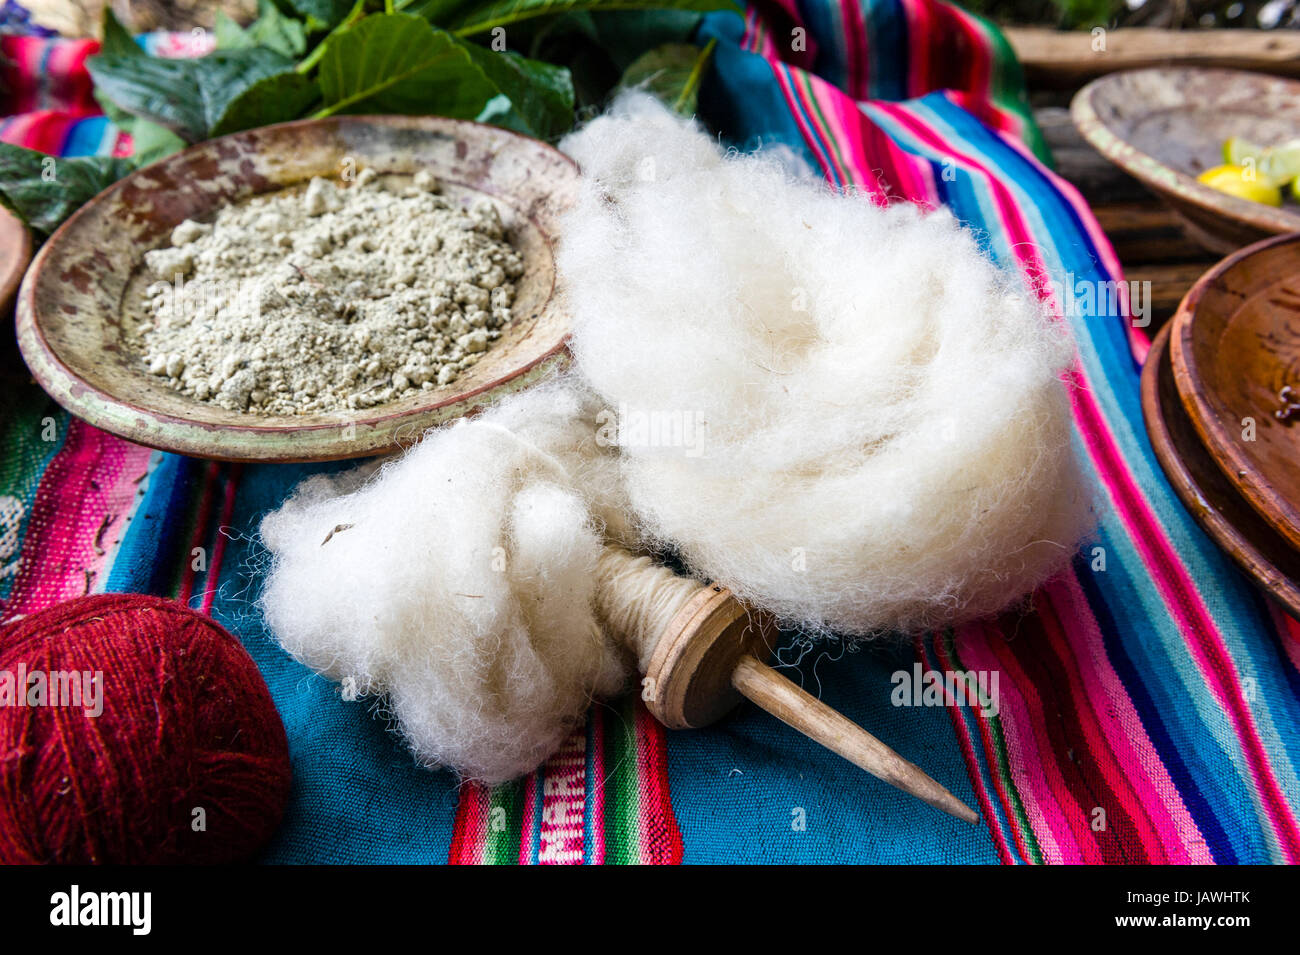 Amaru les gens en utilisant des teintures naturelles pour colorer la laine des moutons pour filer. Banque D'Images